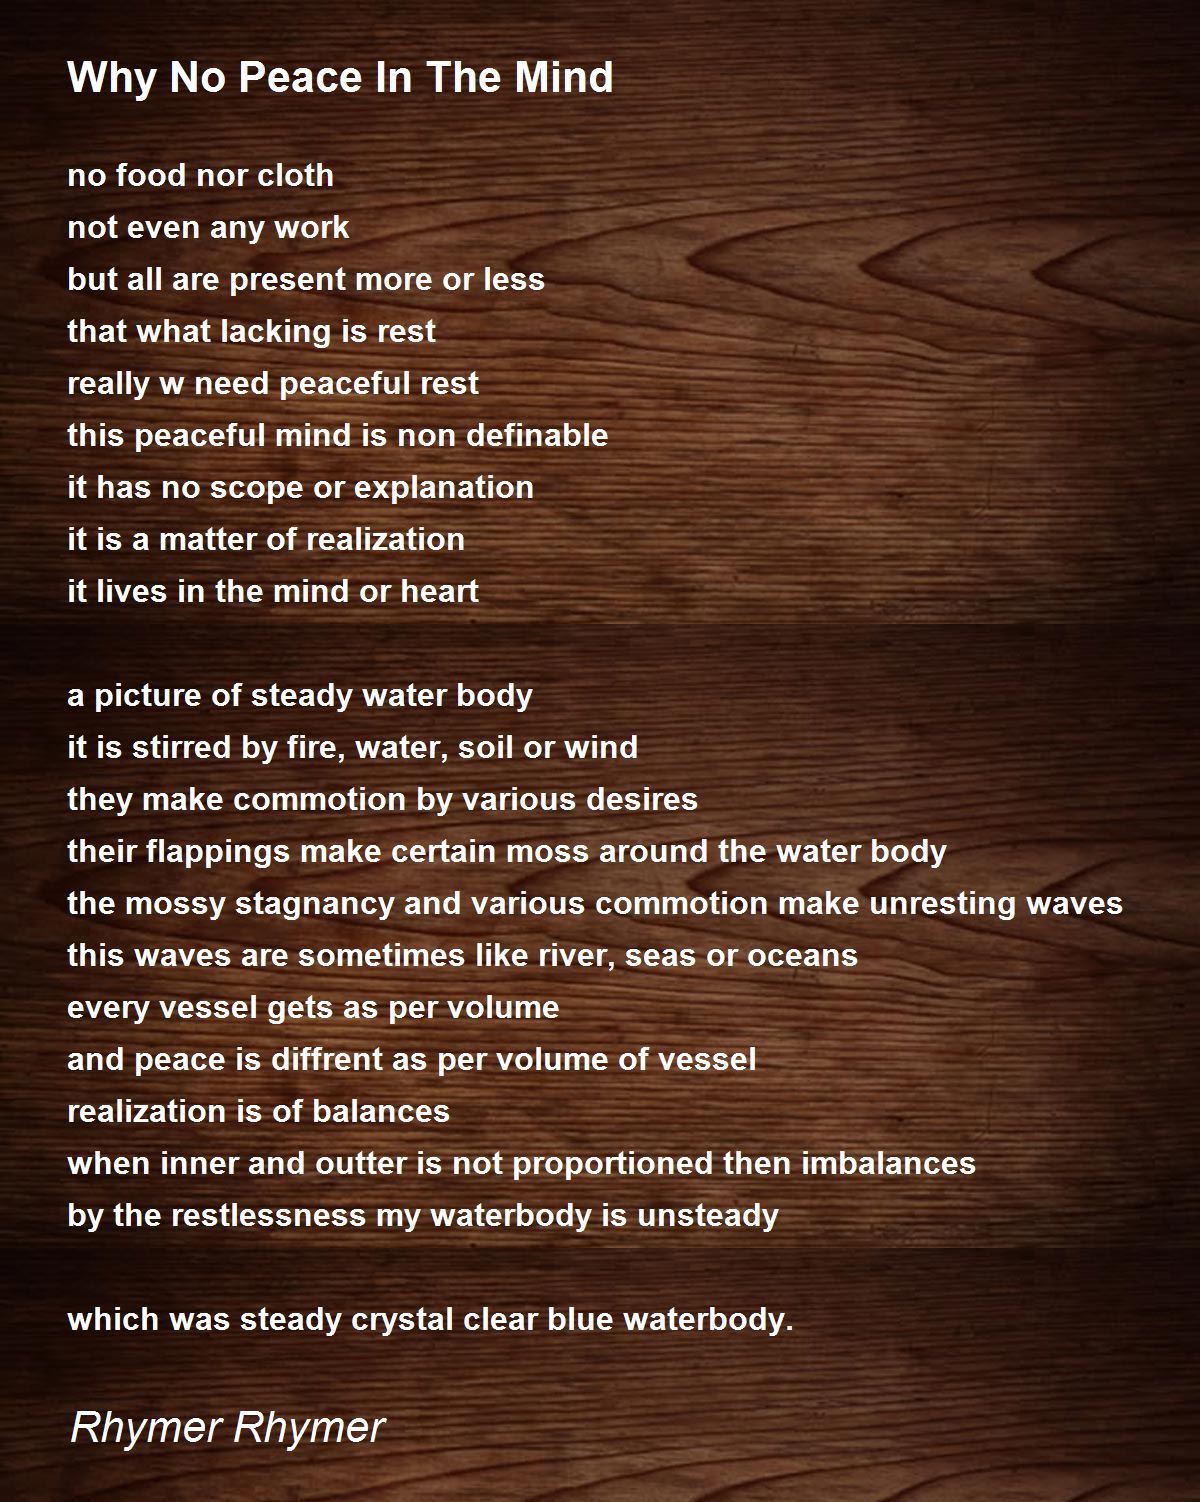 Why No Peace In The Mind - Why No Peace In The Mind Poem by Rhymer